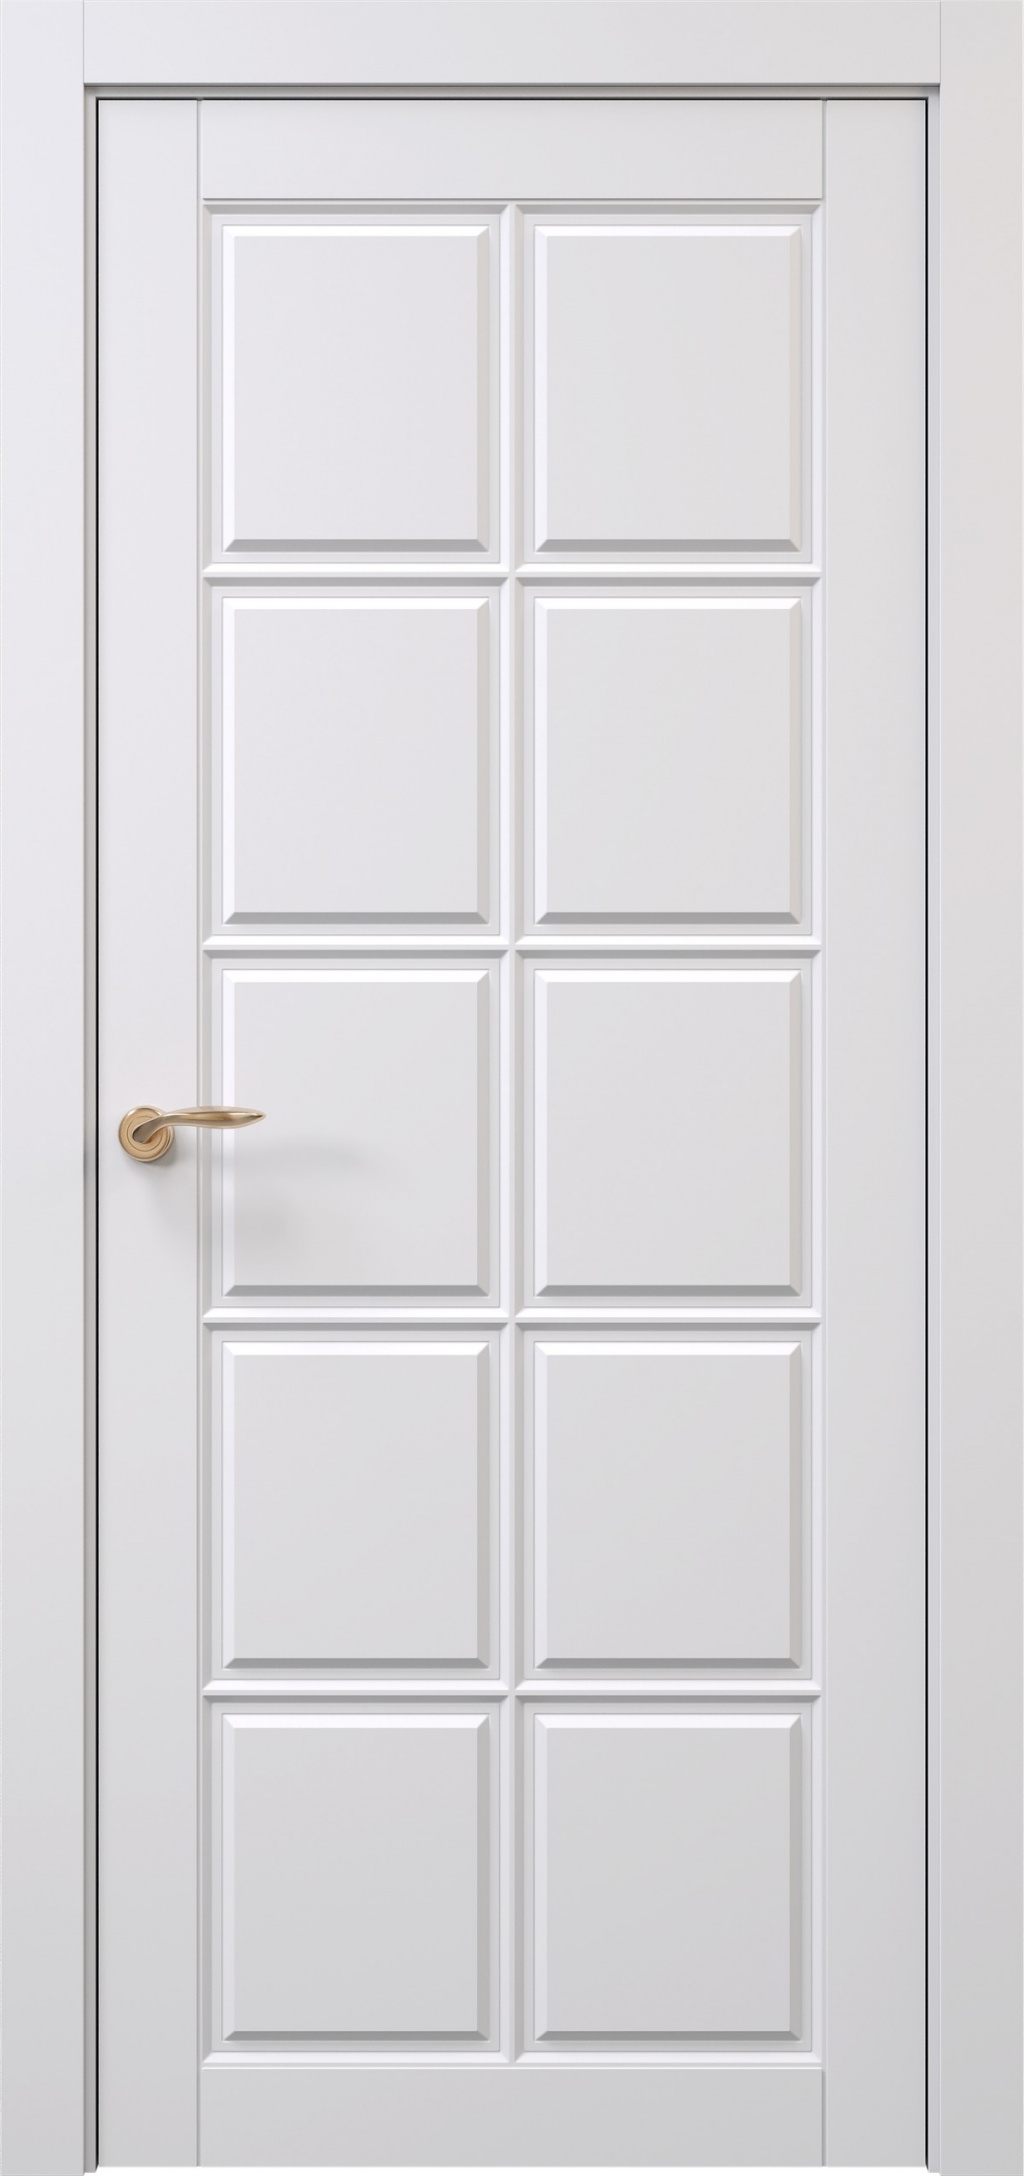 Prestige Межкомнатная дверь Oxford 4 ДГ, арт. 29217 - фото №1